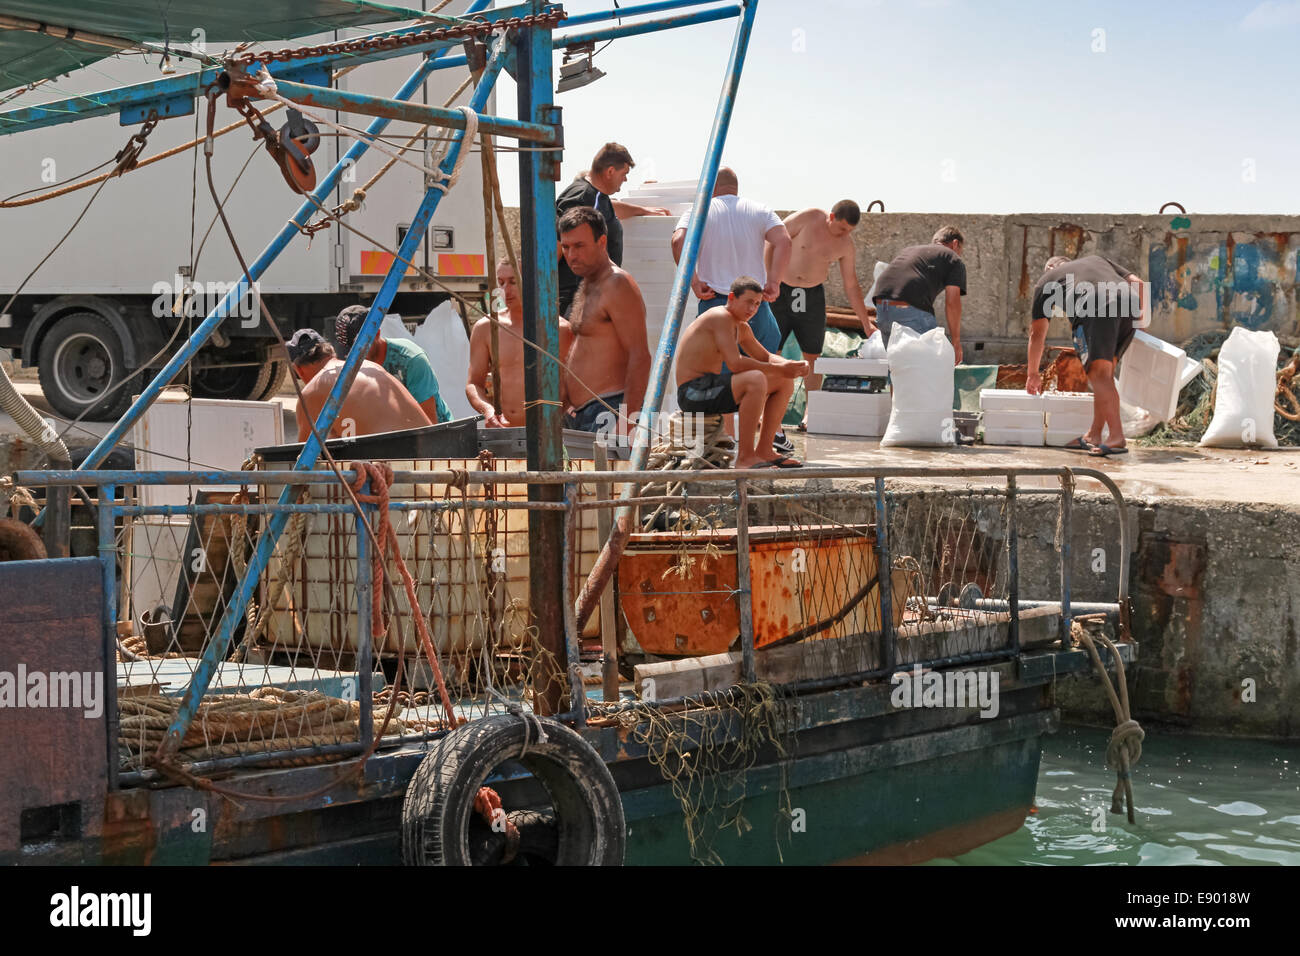 KAVARNA, BULGARIA - JULY 18, 2014: Small fishing boats and fishermen on the coast Stock Photo